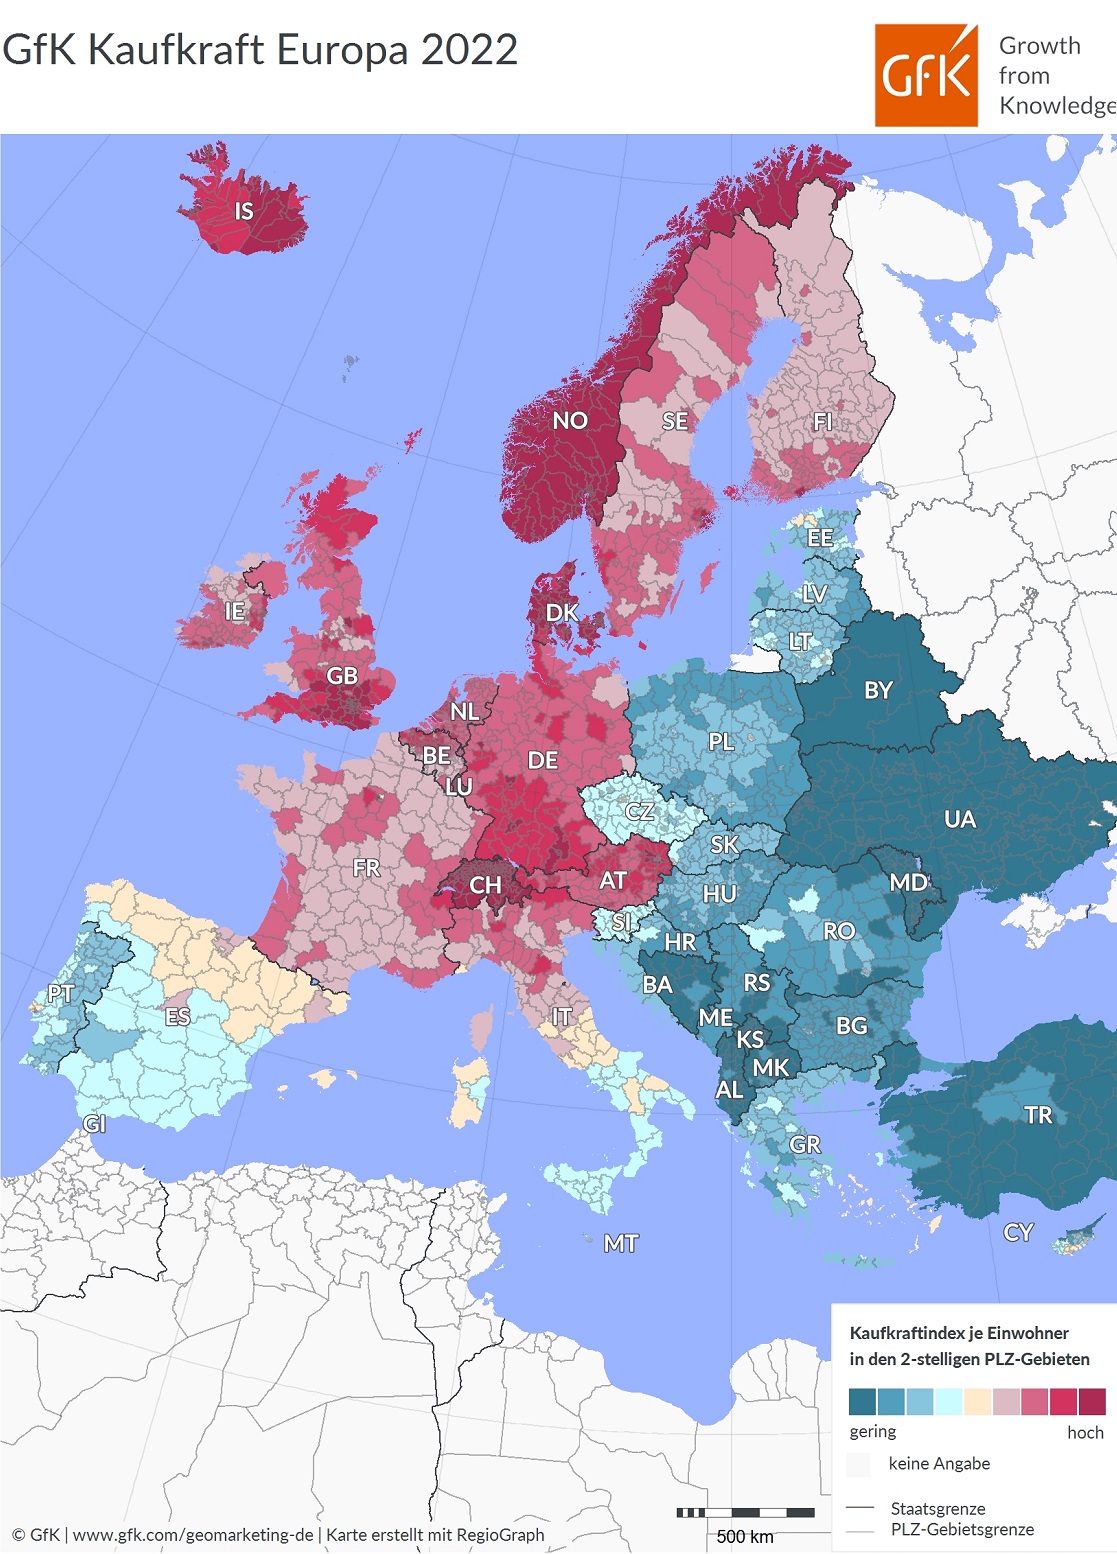 Im Folgenden wird die Kaufkraftverteilung in den Niederlanden, Frankreich, Italien, Spanien, der Tschechischen Republik, Polen, Ungarn und Rumänien genauer betrachtet. Diese bieten aufschlussreiche Einblicke in die regionale Verteilung des Ausgabepotenzials innerhalb der jeweiligen Länder. 